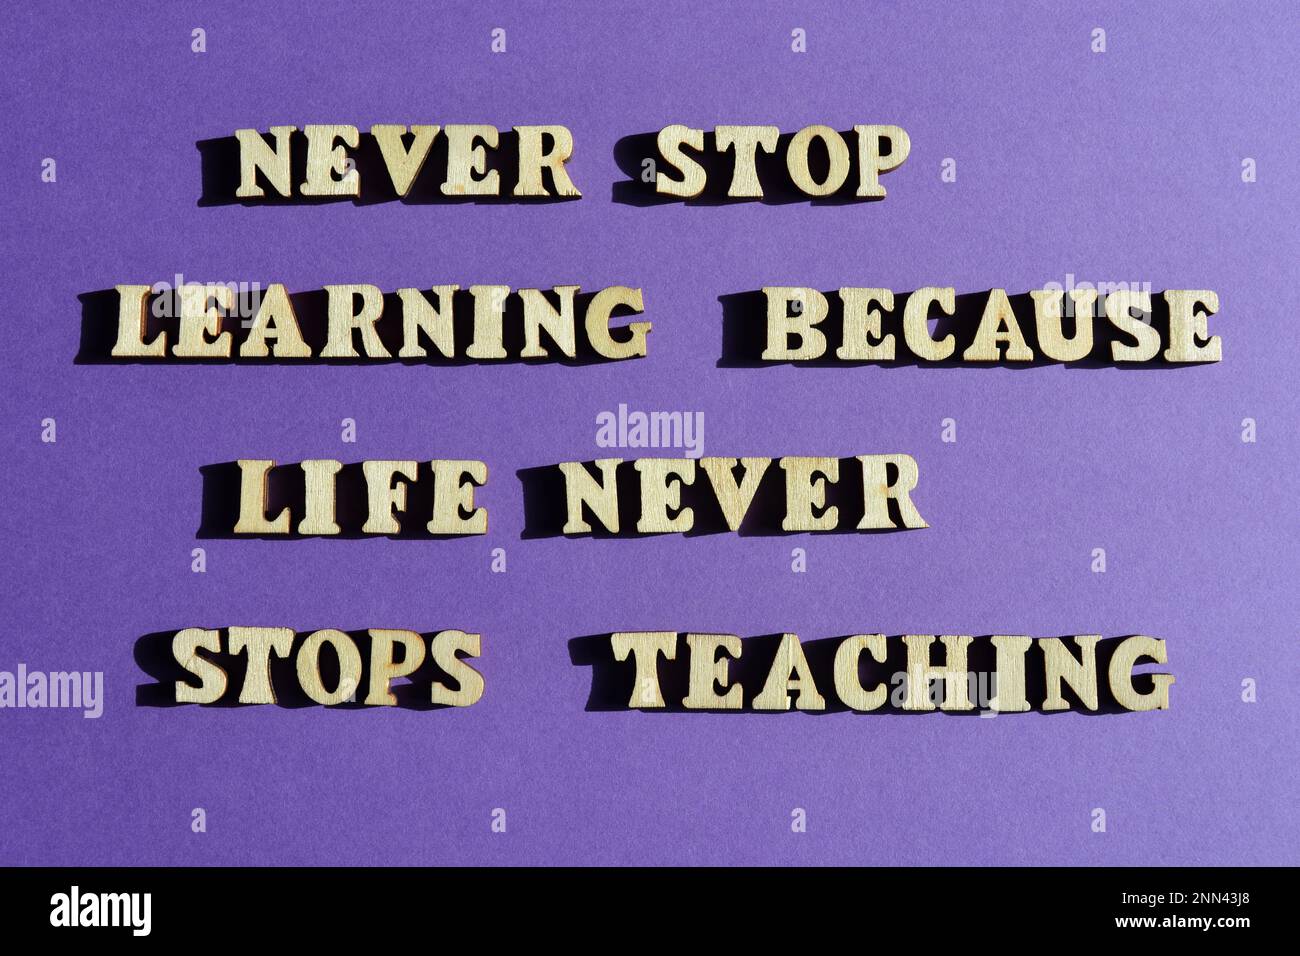 Nunca dejes de aprender porque la vida nunca deja de enseñar, frase motivadora en letras de alfabeto de madera aisladas sobre fondo púrpura Foto de stock